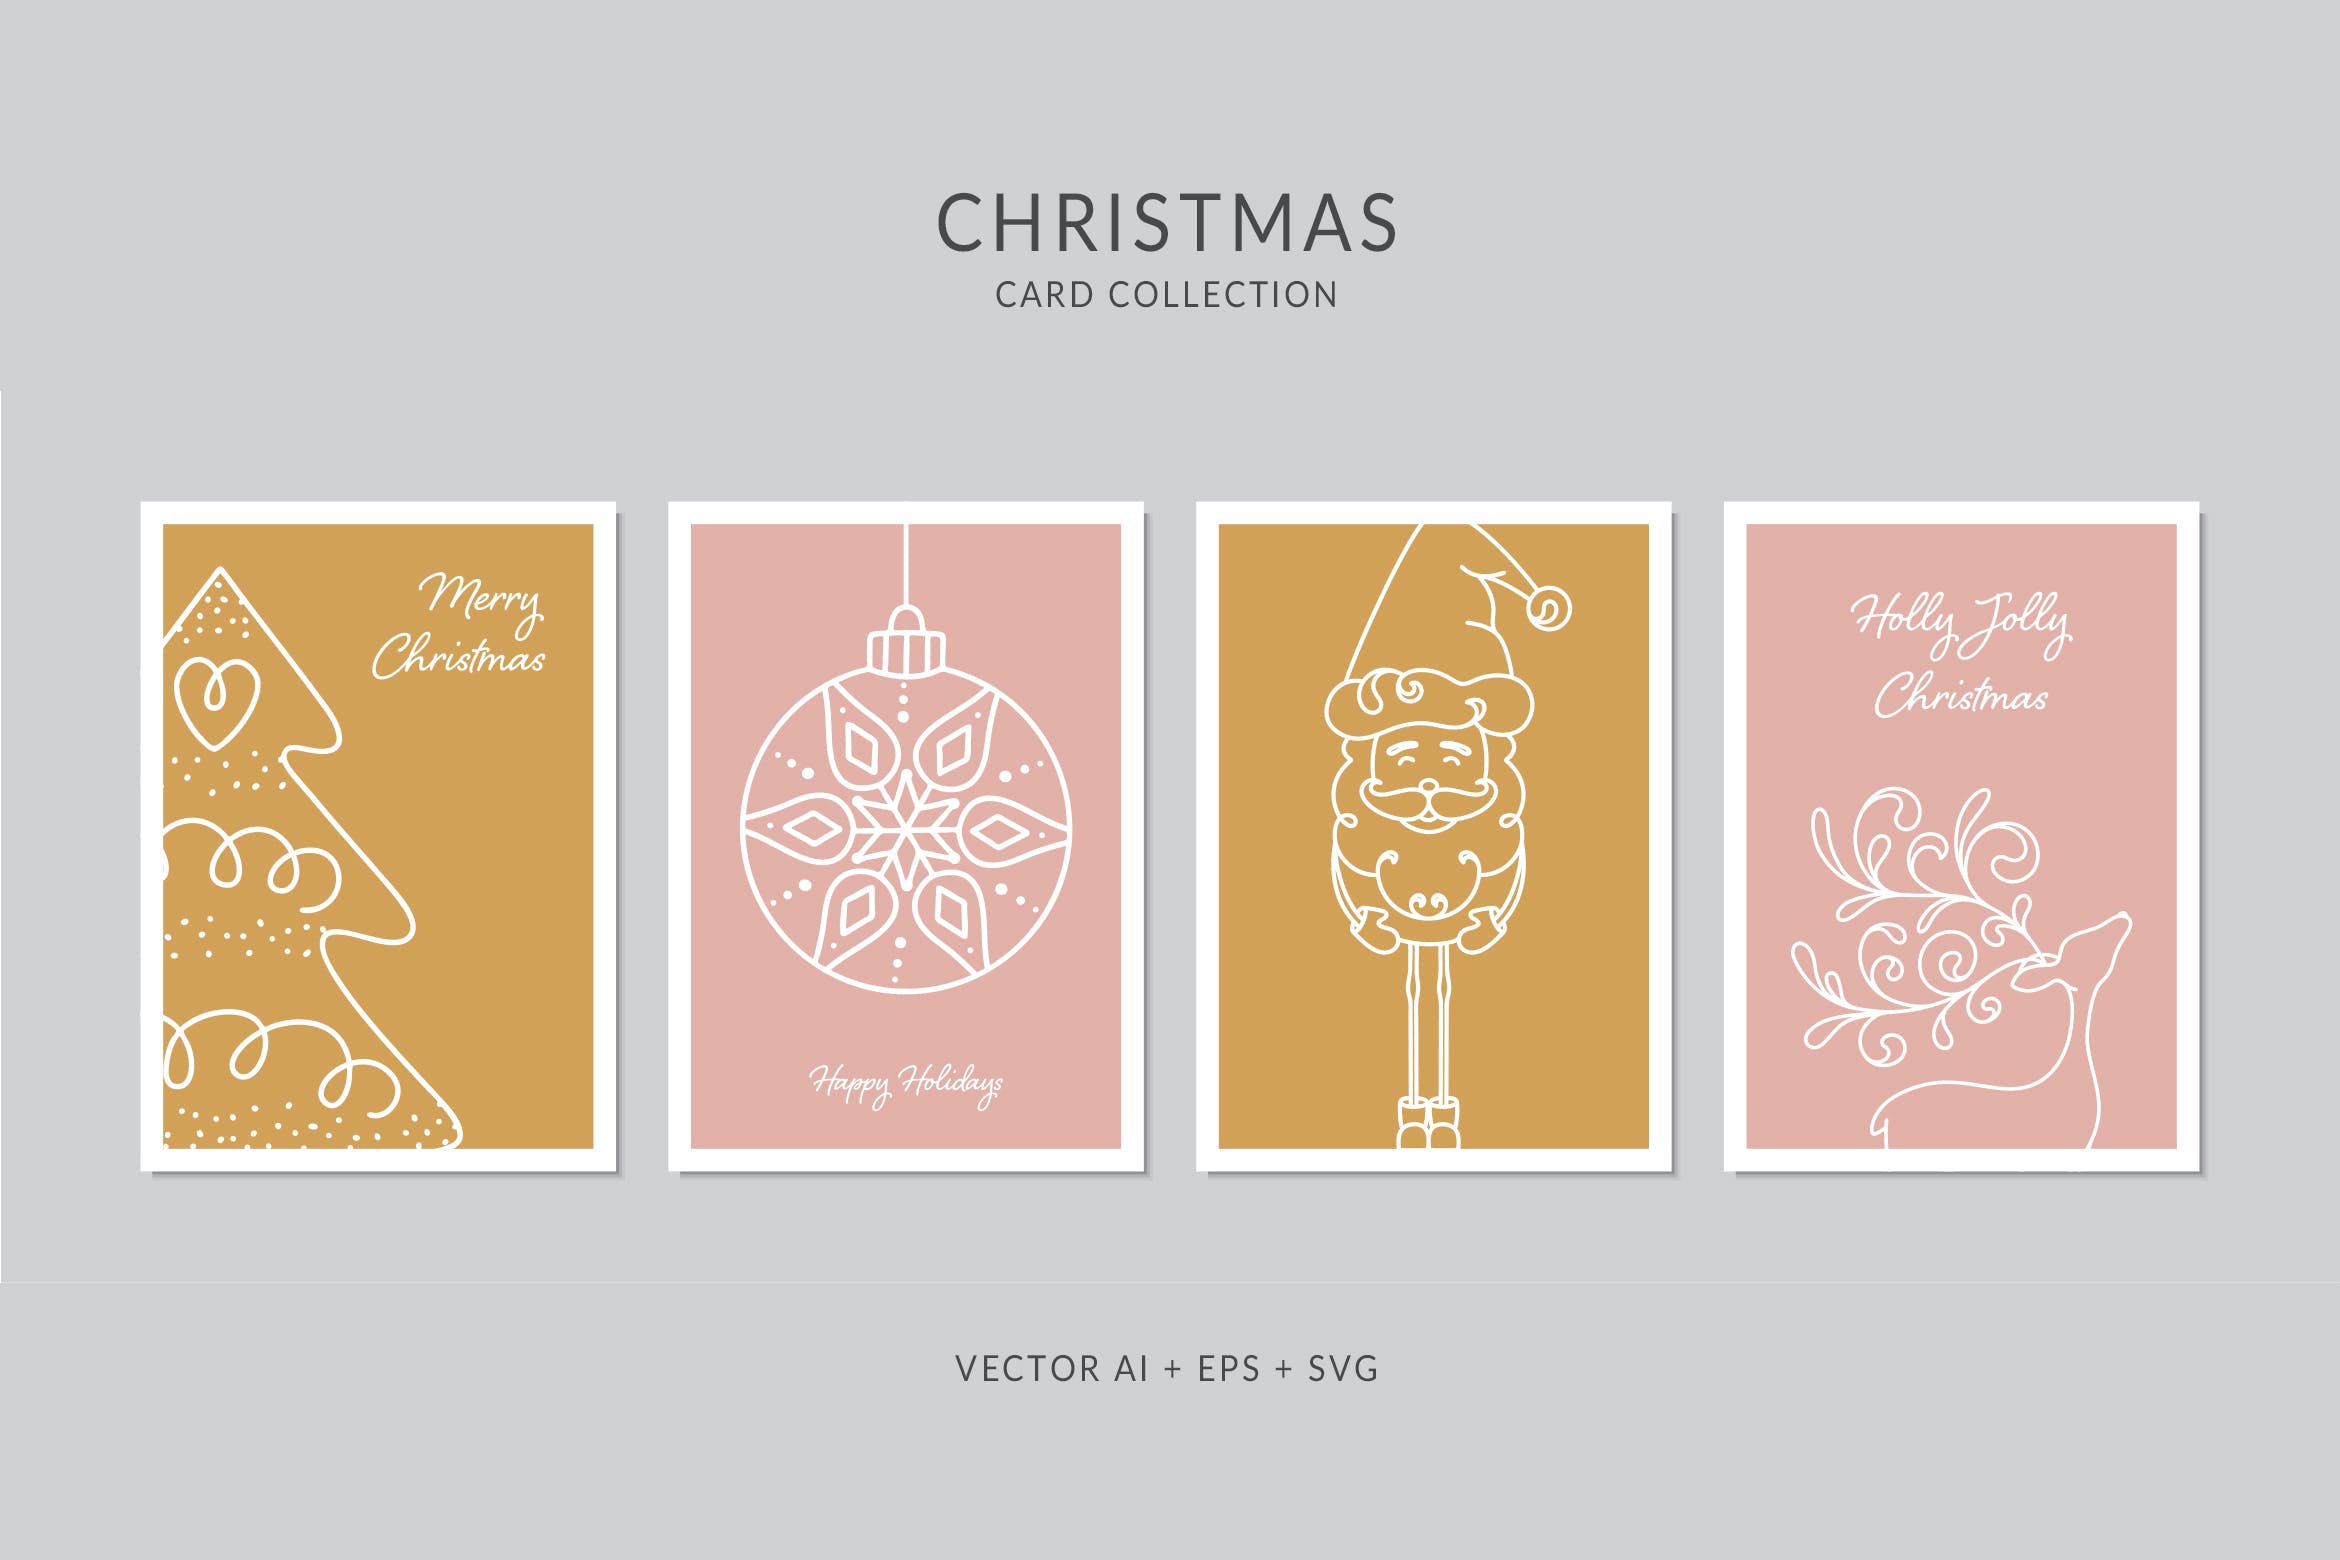 简笔画圣诞节元素手绘图案圣诞节贺卡模板 Christmas Greeting Card Vector Set插图